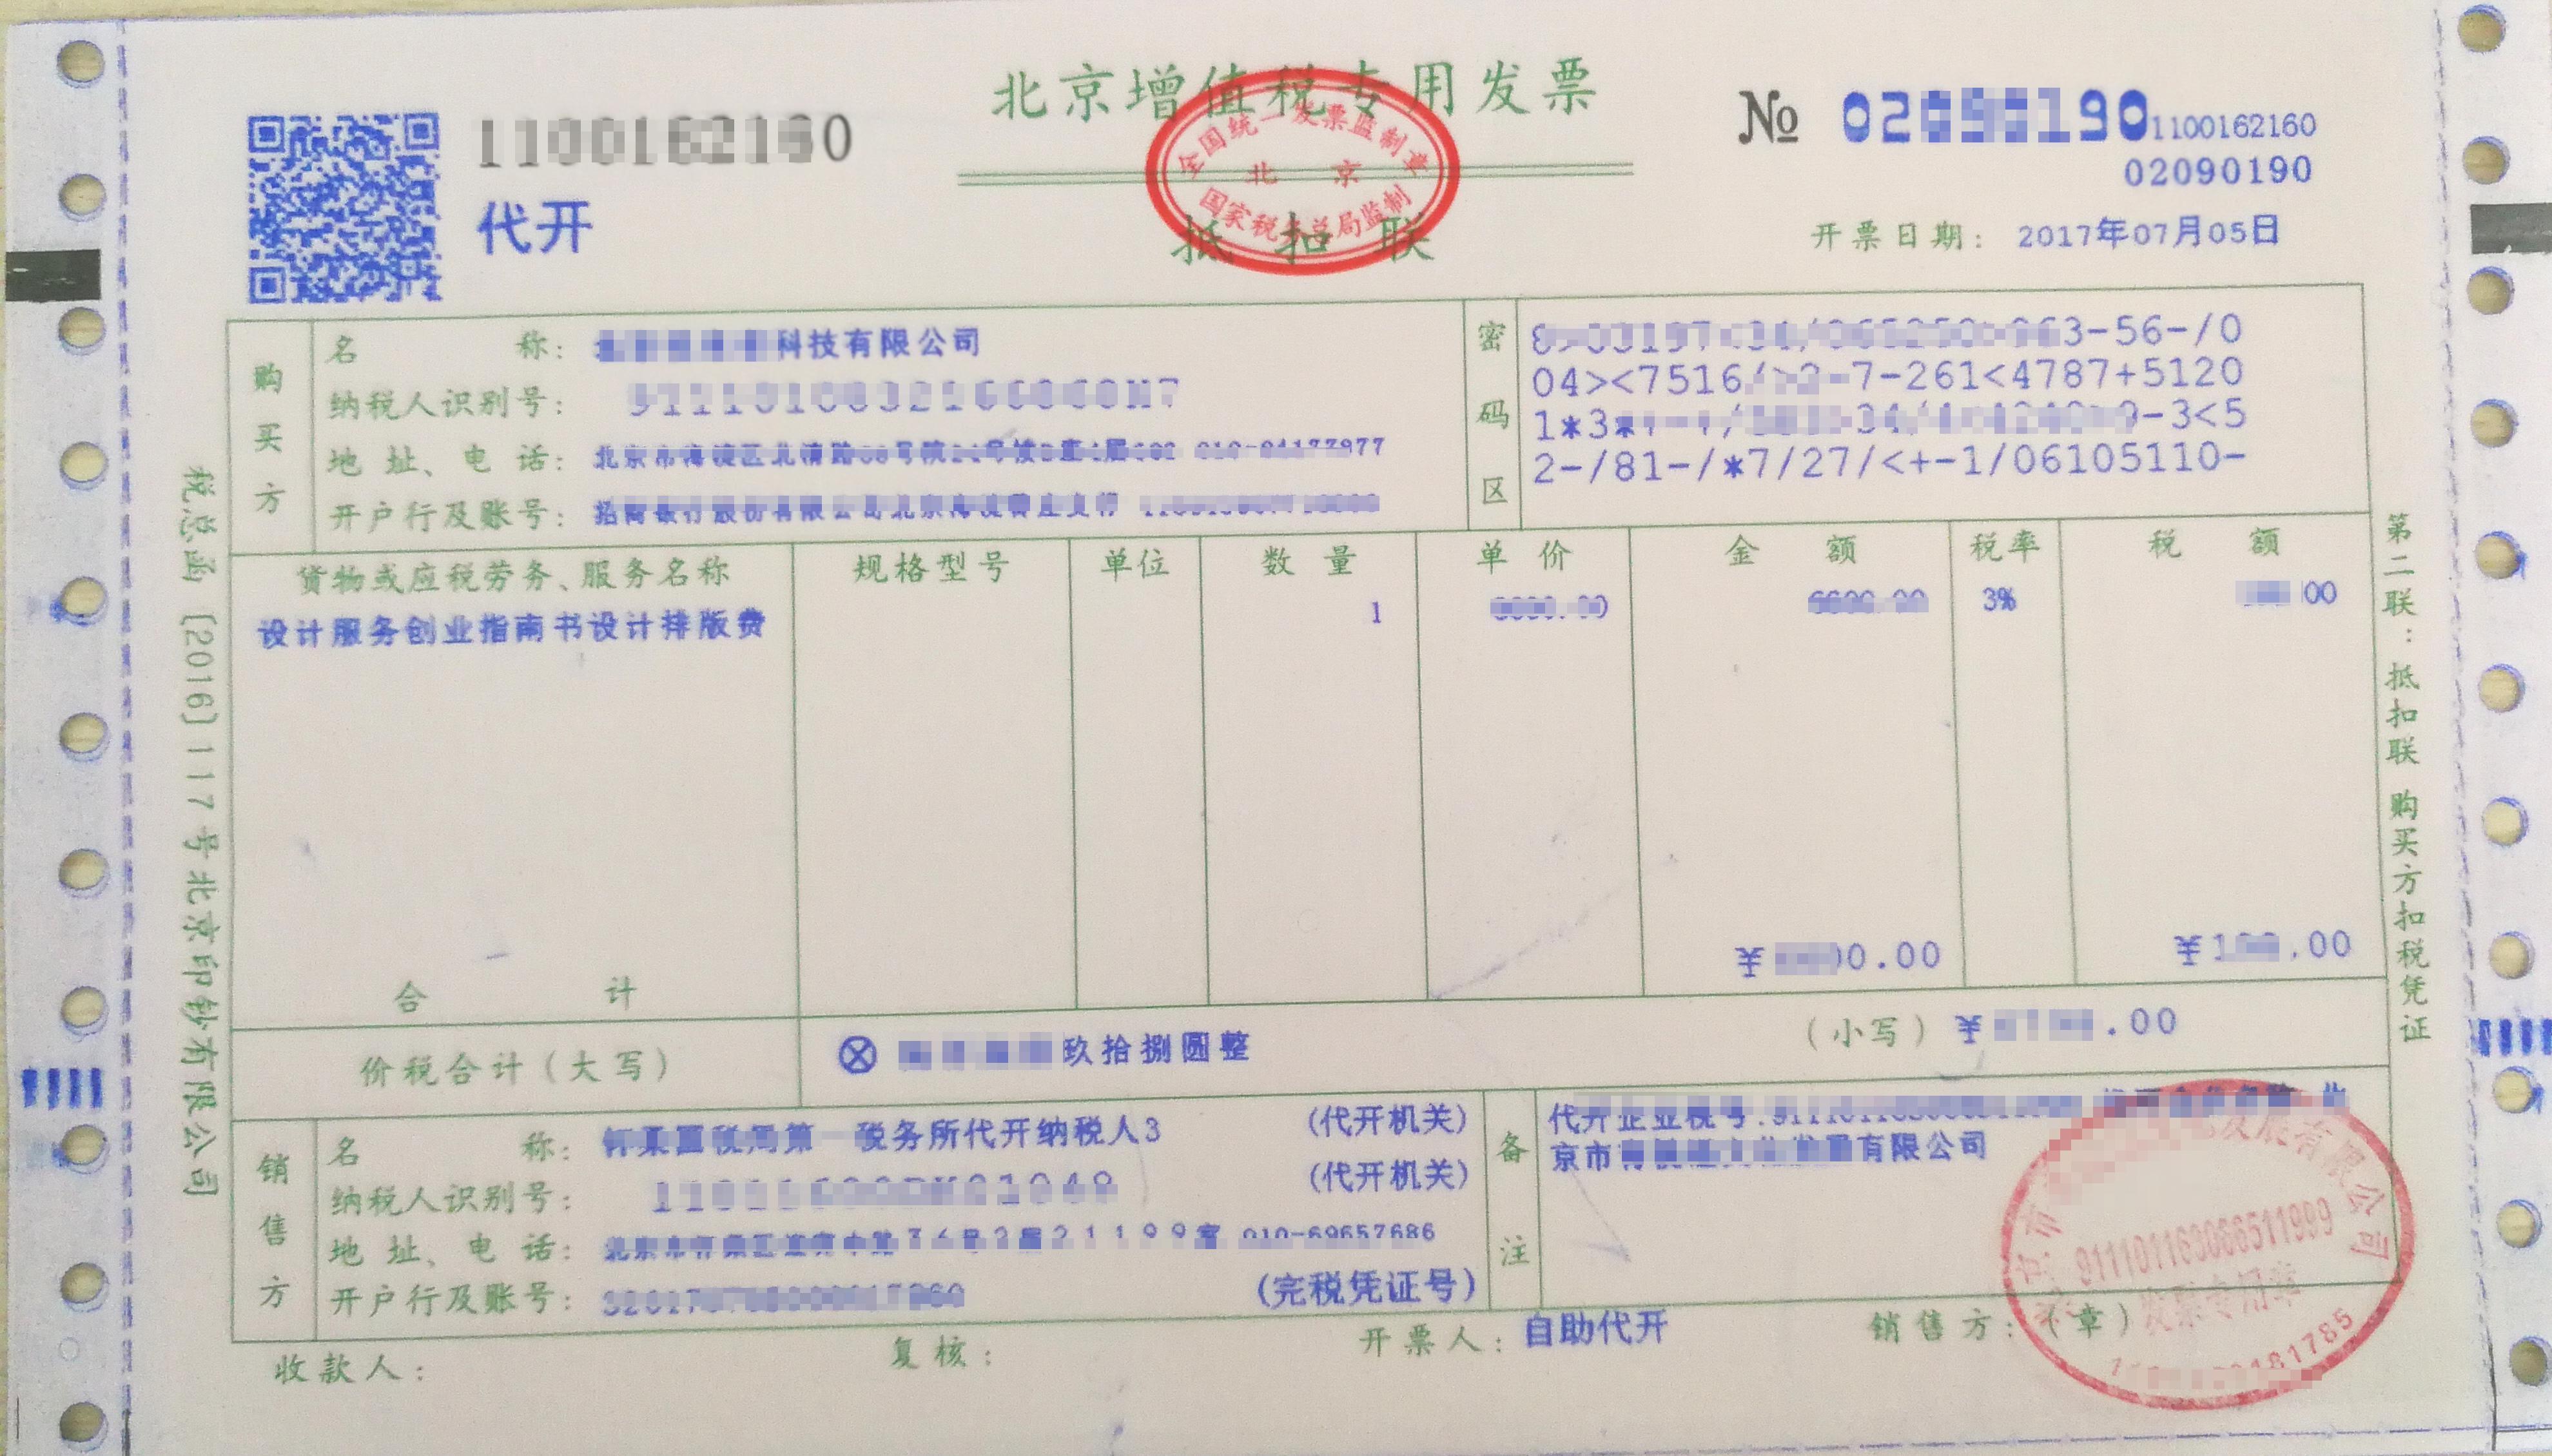 湖南省机制门诊发票模板 - 众意好医师